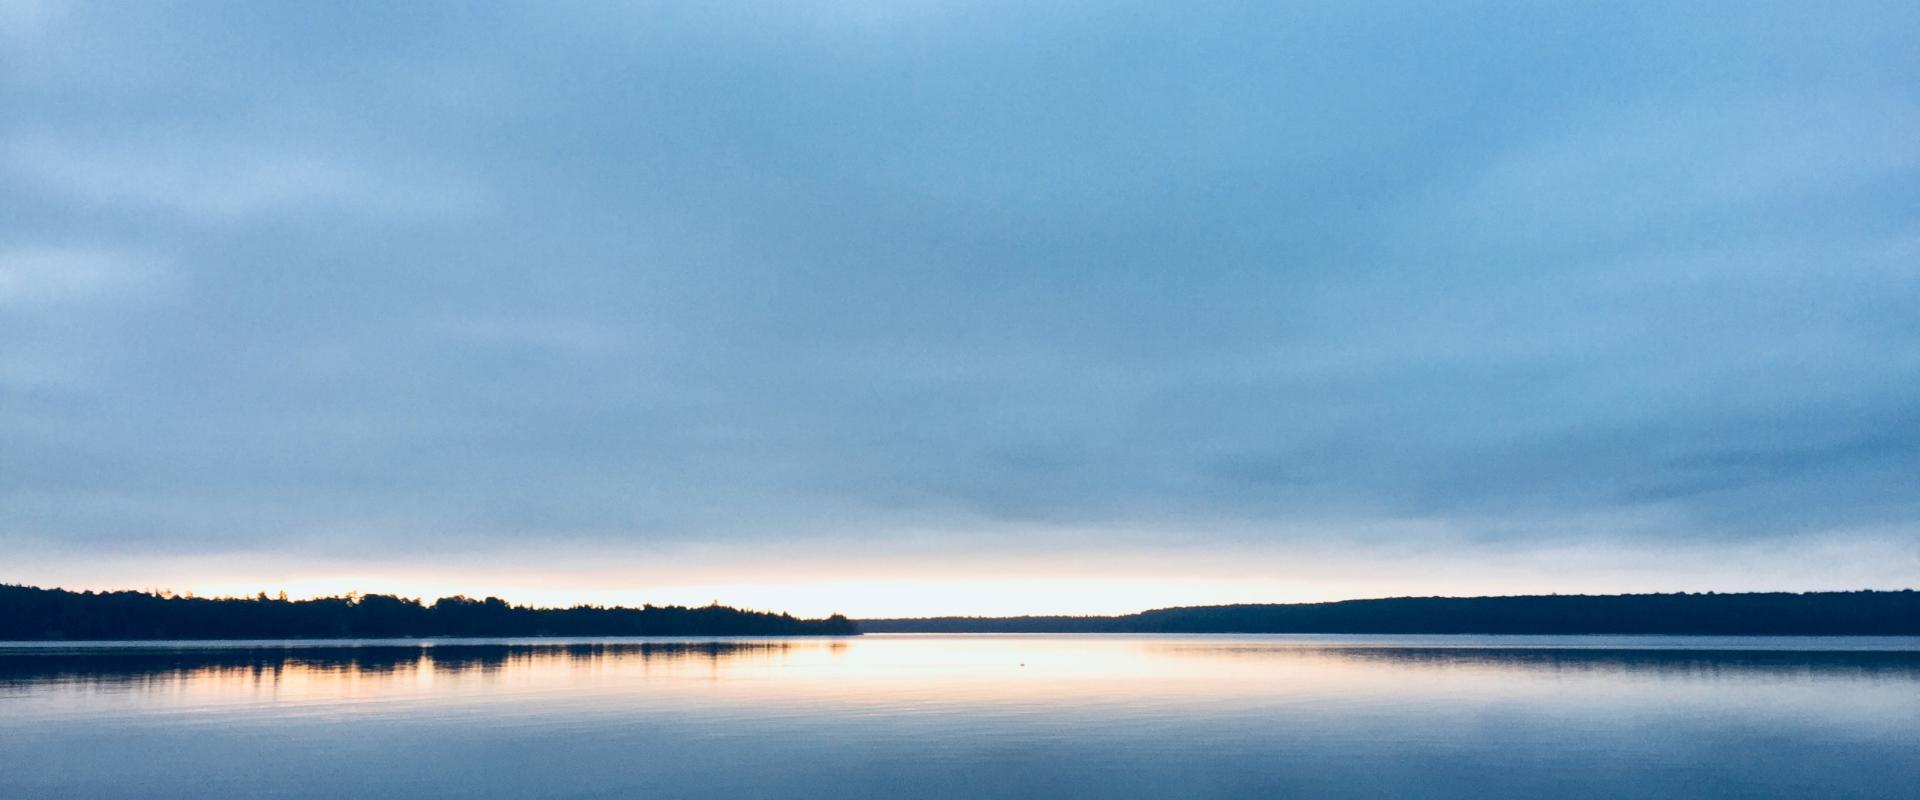 Photo du soleil se couchant à l'horizon sur un lac 